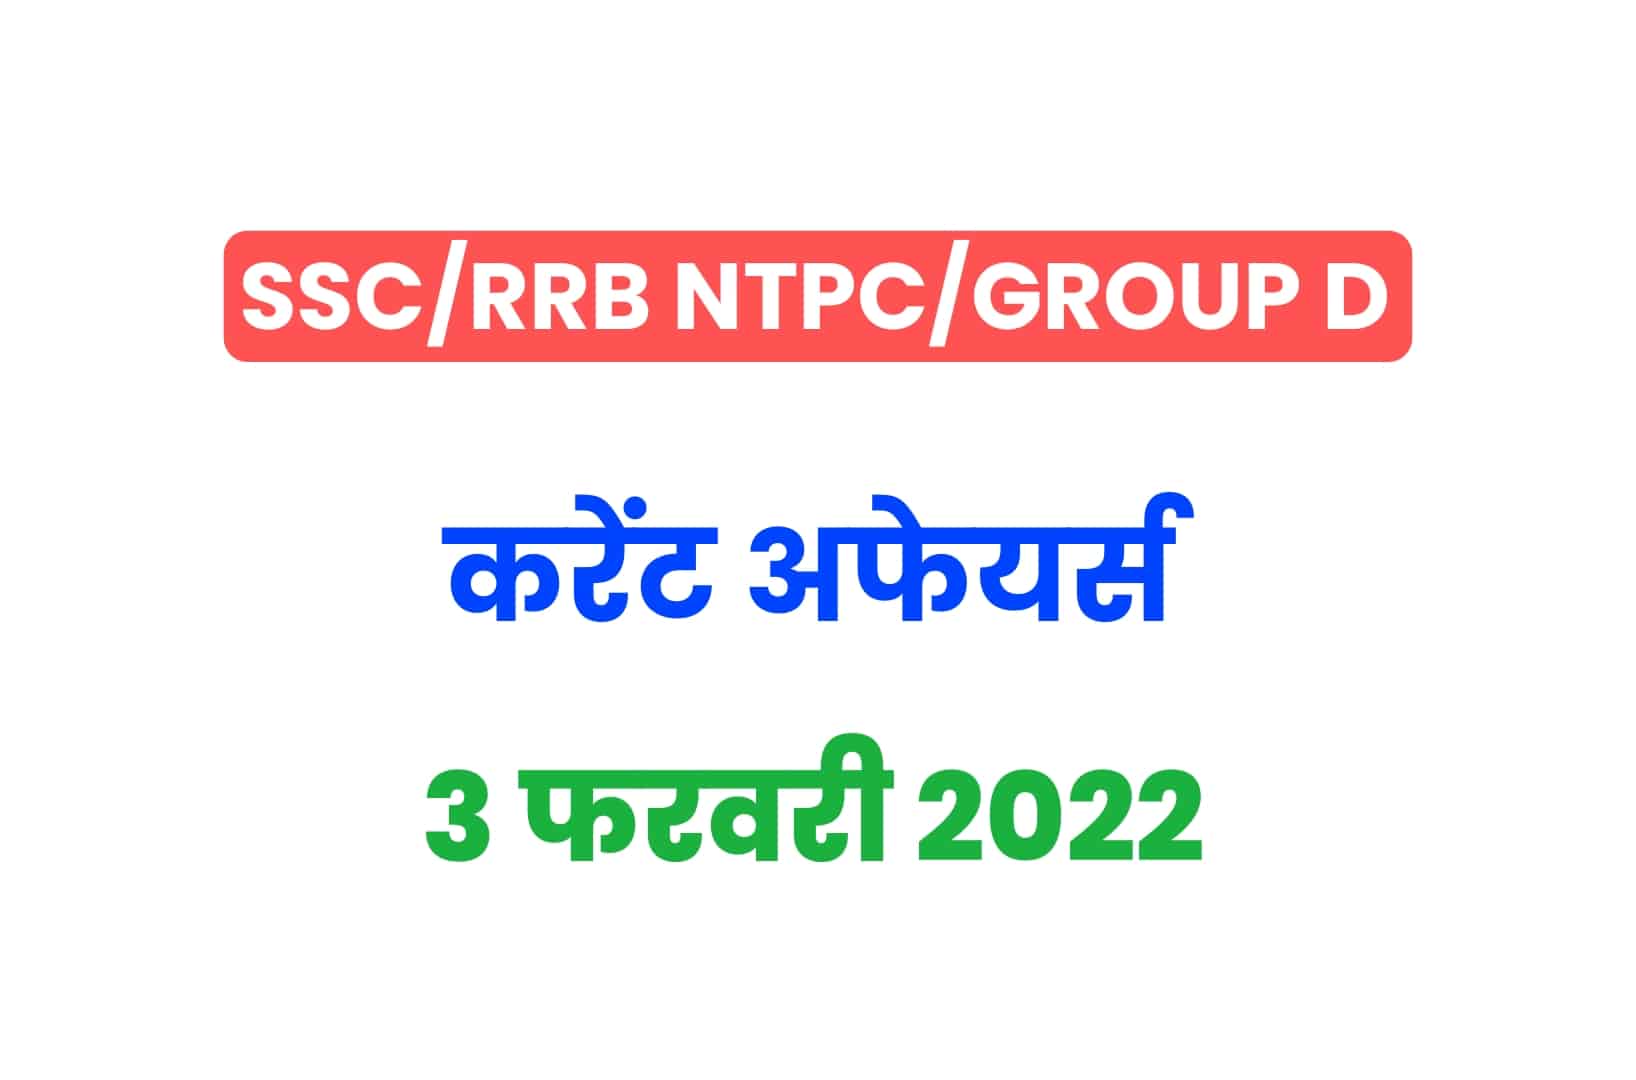 SSC/RRB Group D/NTPC Exam 2022: 3 फरवरी के 15 महत्वपूर्ण करेंट अफेयर्स के प्रश्न, जरूर पढ़ें